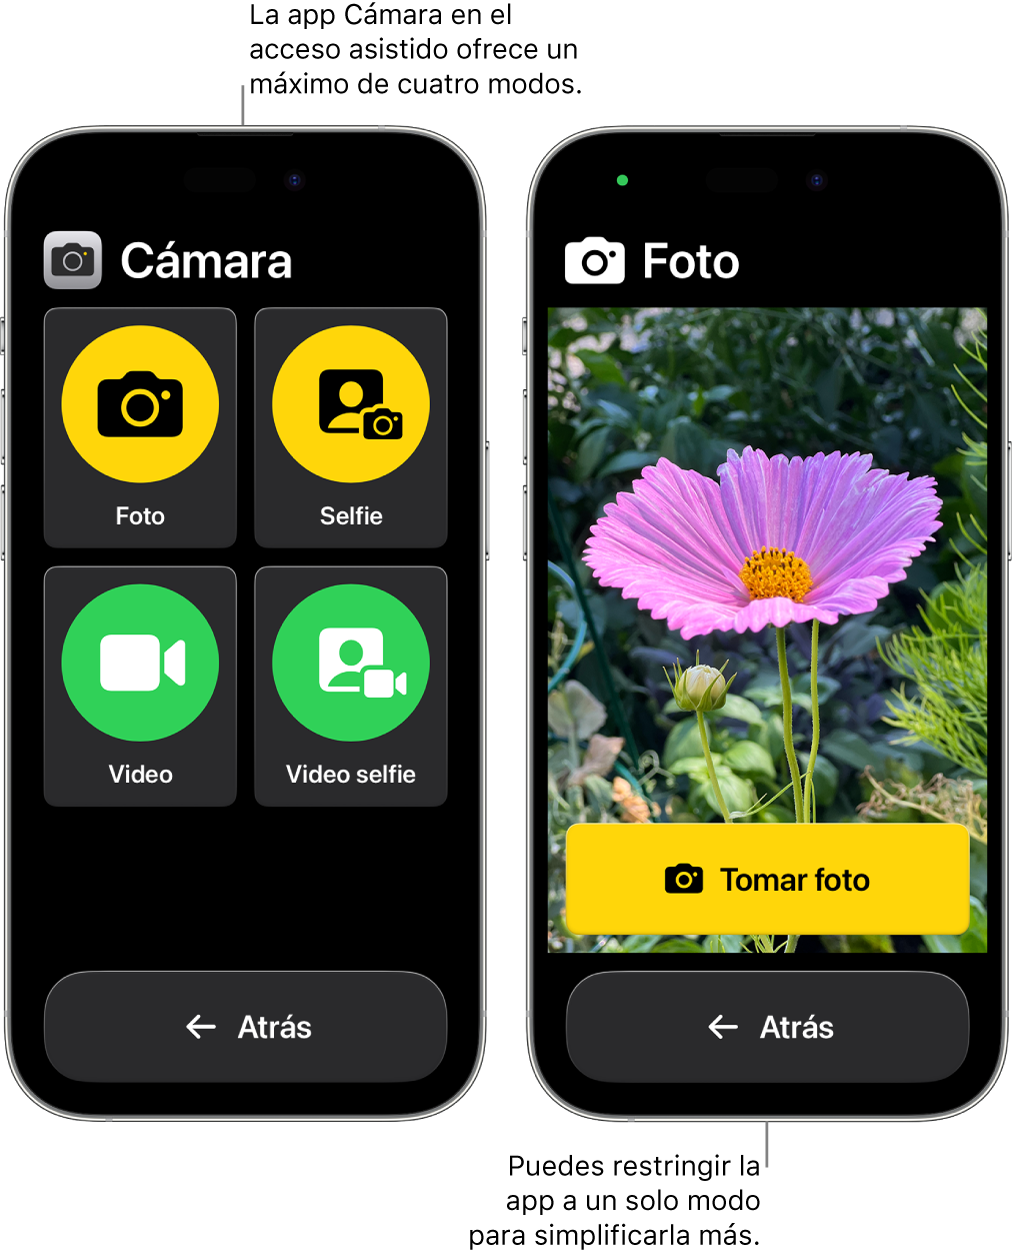 Dos iPhone en el modo de acceso asistido. Un iPhone muestra la app Cámara con los modos de cámara que el usuario puede elegir, como Video y Selfie. El otro iPhone muestra la app Cámara con un solo modo para tomar fotos.